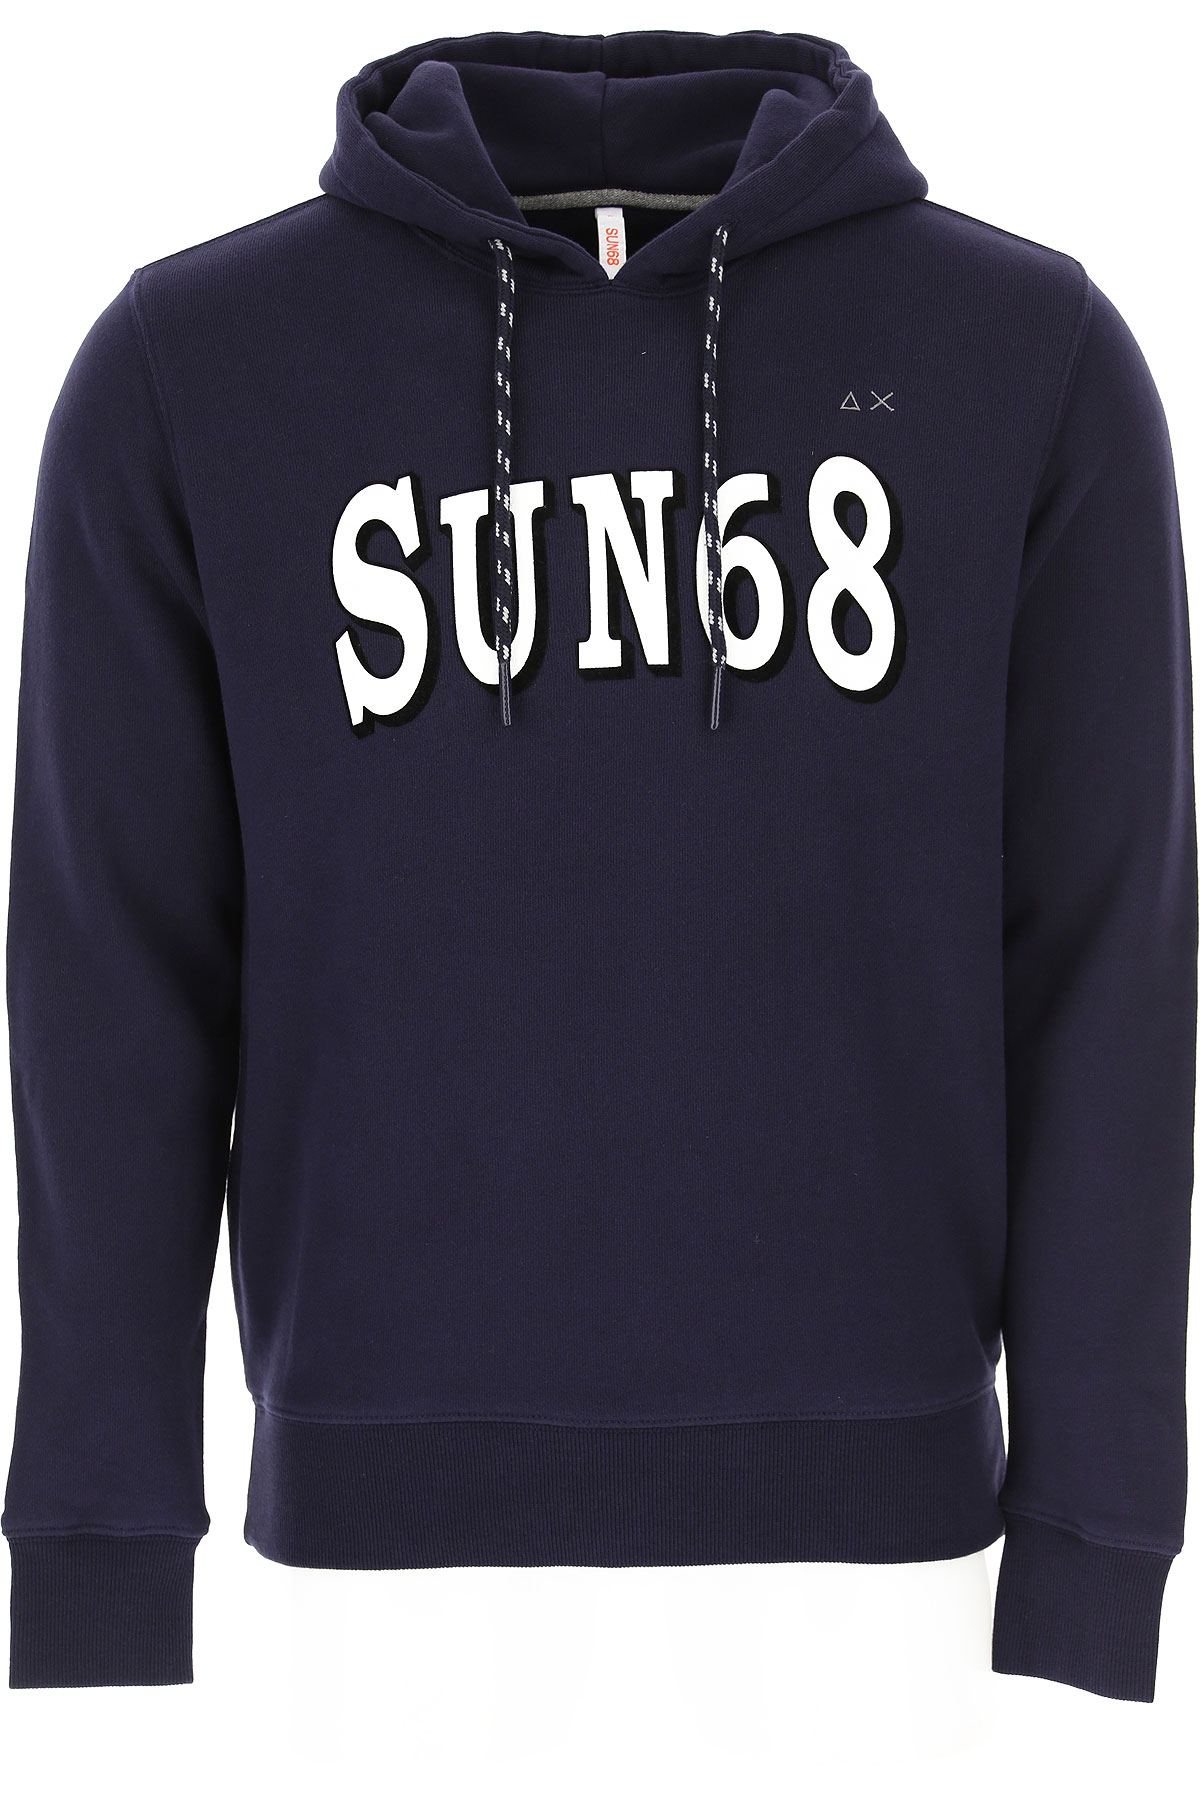 Sun68 Sweatshirt für Herren, Kapuzenpulli, Hoodie, Sweats Günstig im Sale, Marineblau, Baumwolle, 2017, L M S XL